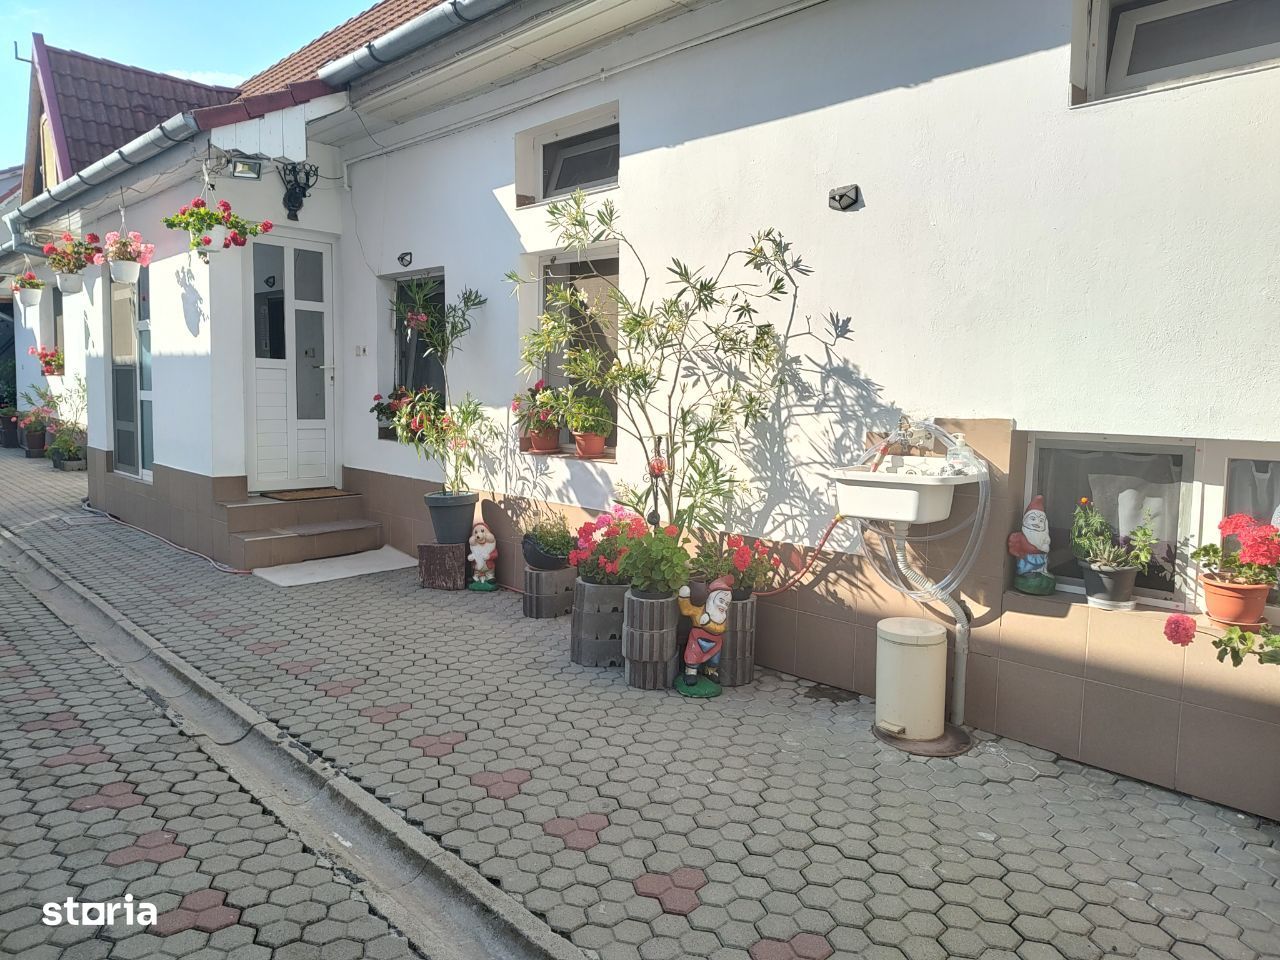 Casa de vanzare in Sibiu( Cristian)